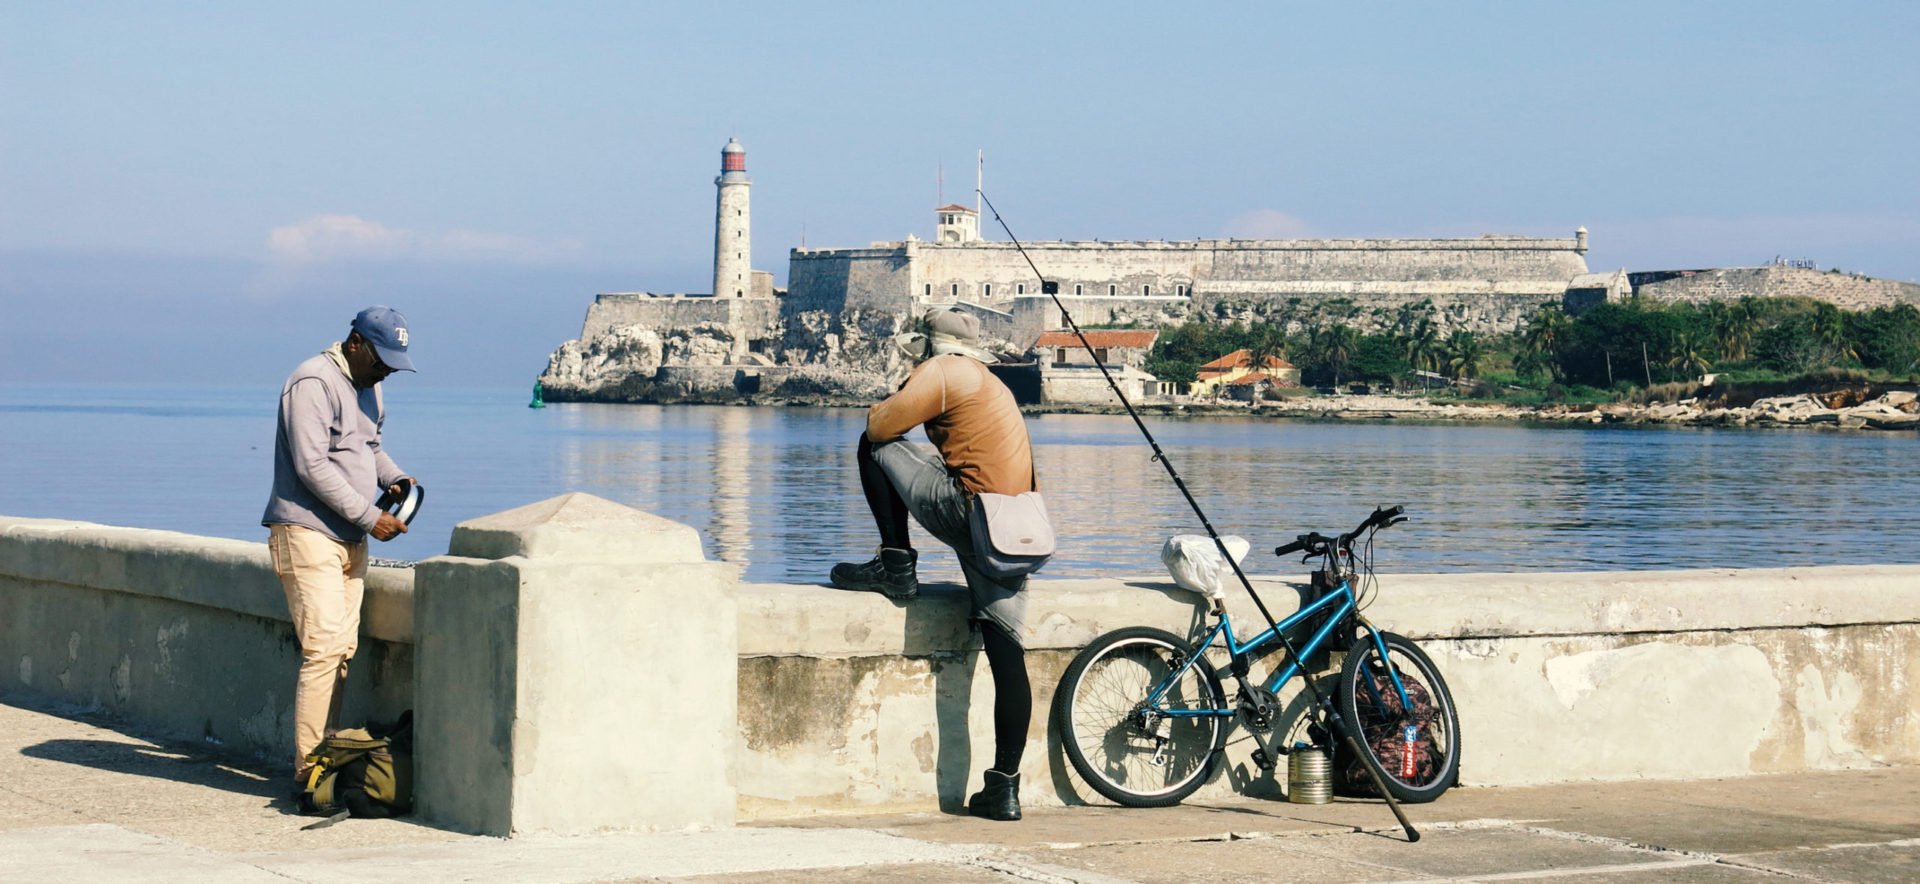 Pescadores en bicicleta. Canal de la bahía de La Habana. El Catillo del Morro.